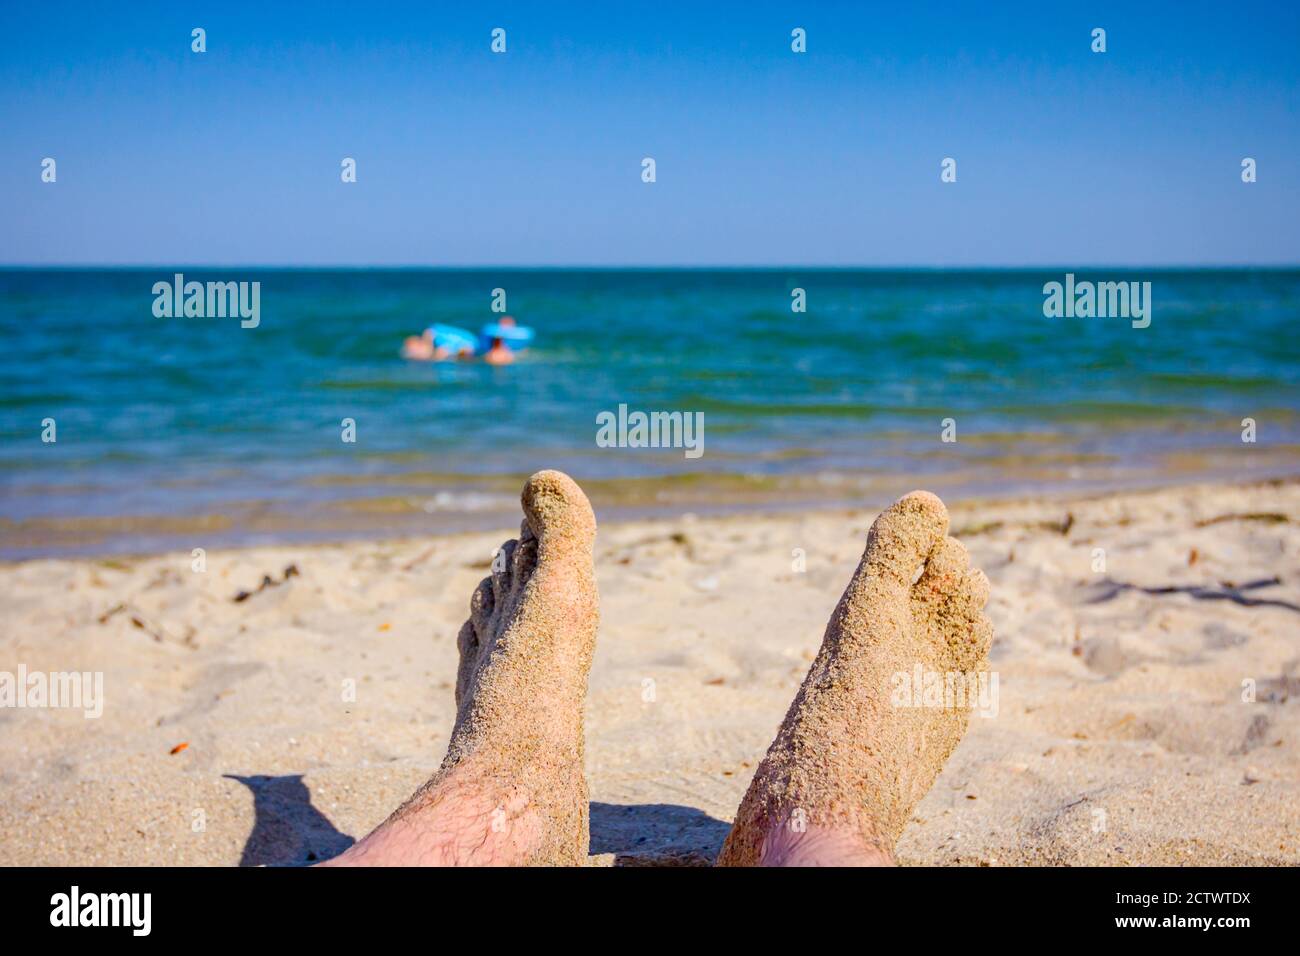 Le gambe dell'uomo sono al sole distendersi sulla sabbia accanto alla costa, sulla spiaggia pubblica. Foto Stock